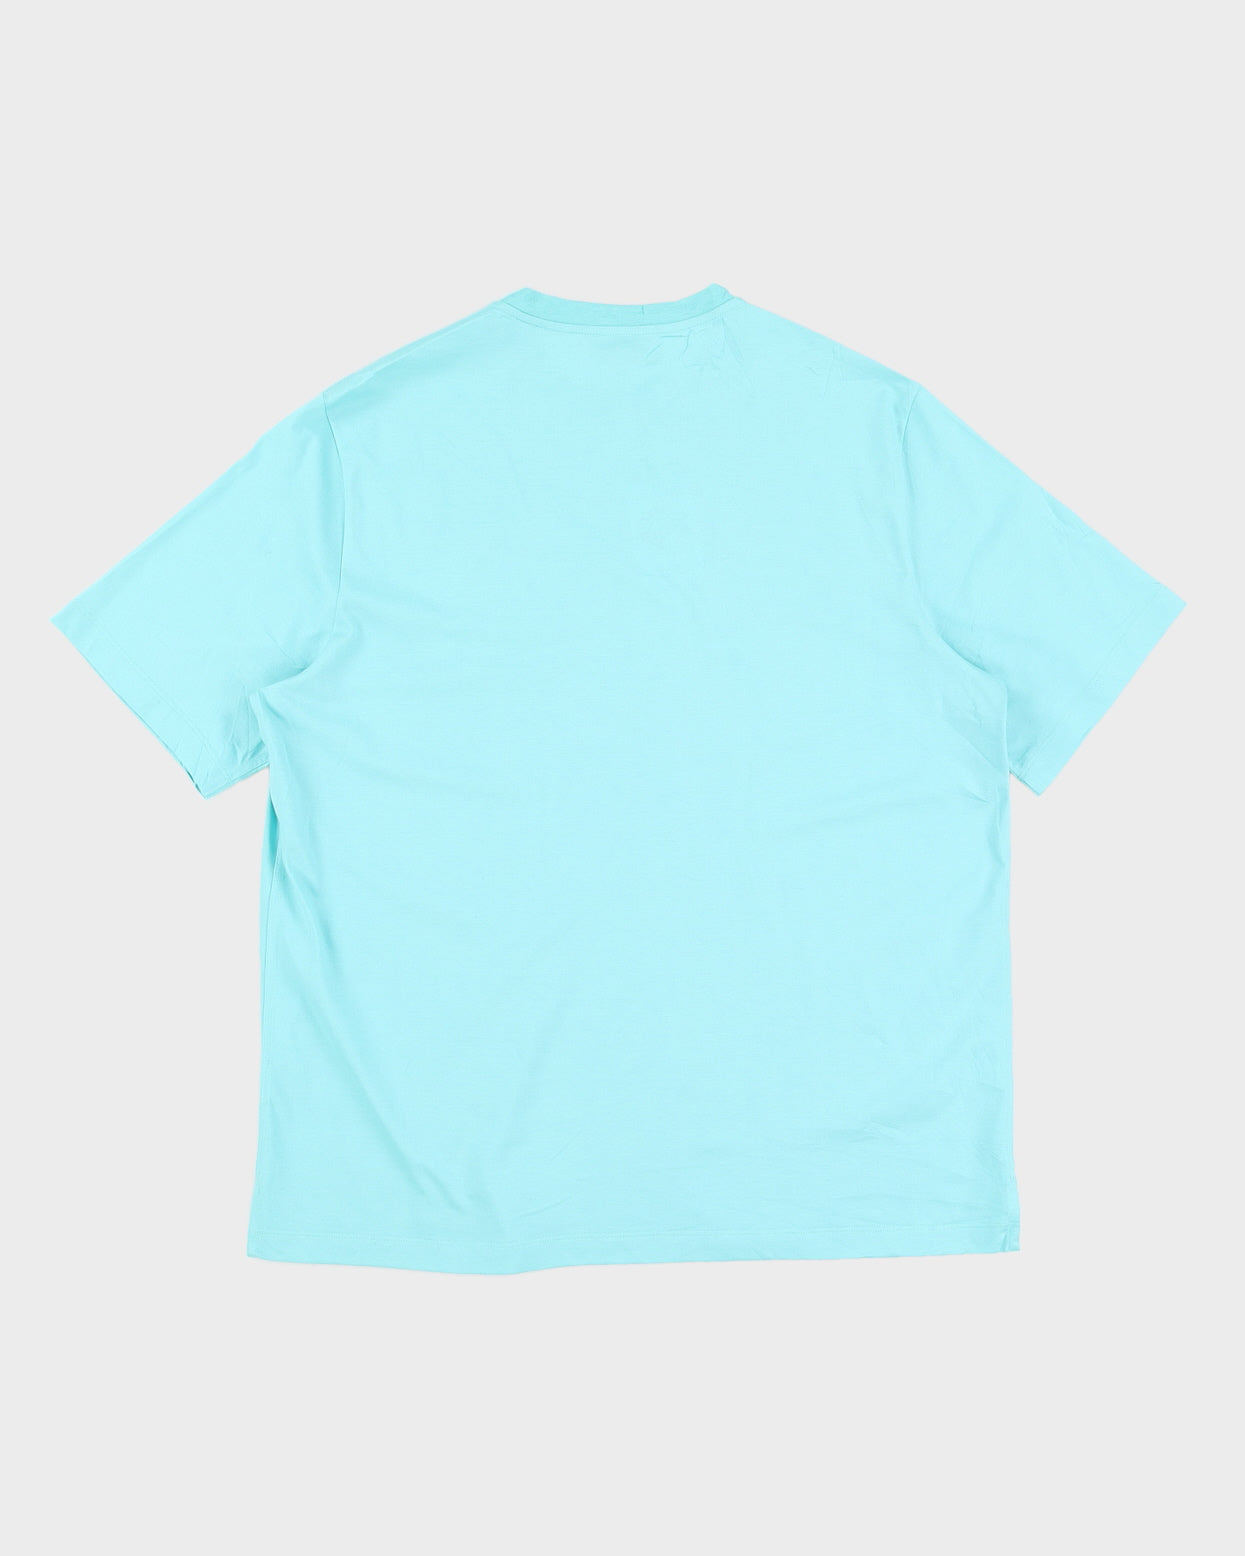 Hermes Blue Surfboard Beach T-Shirt - XL